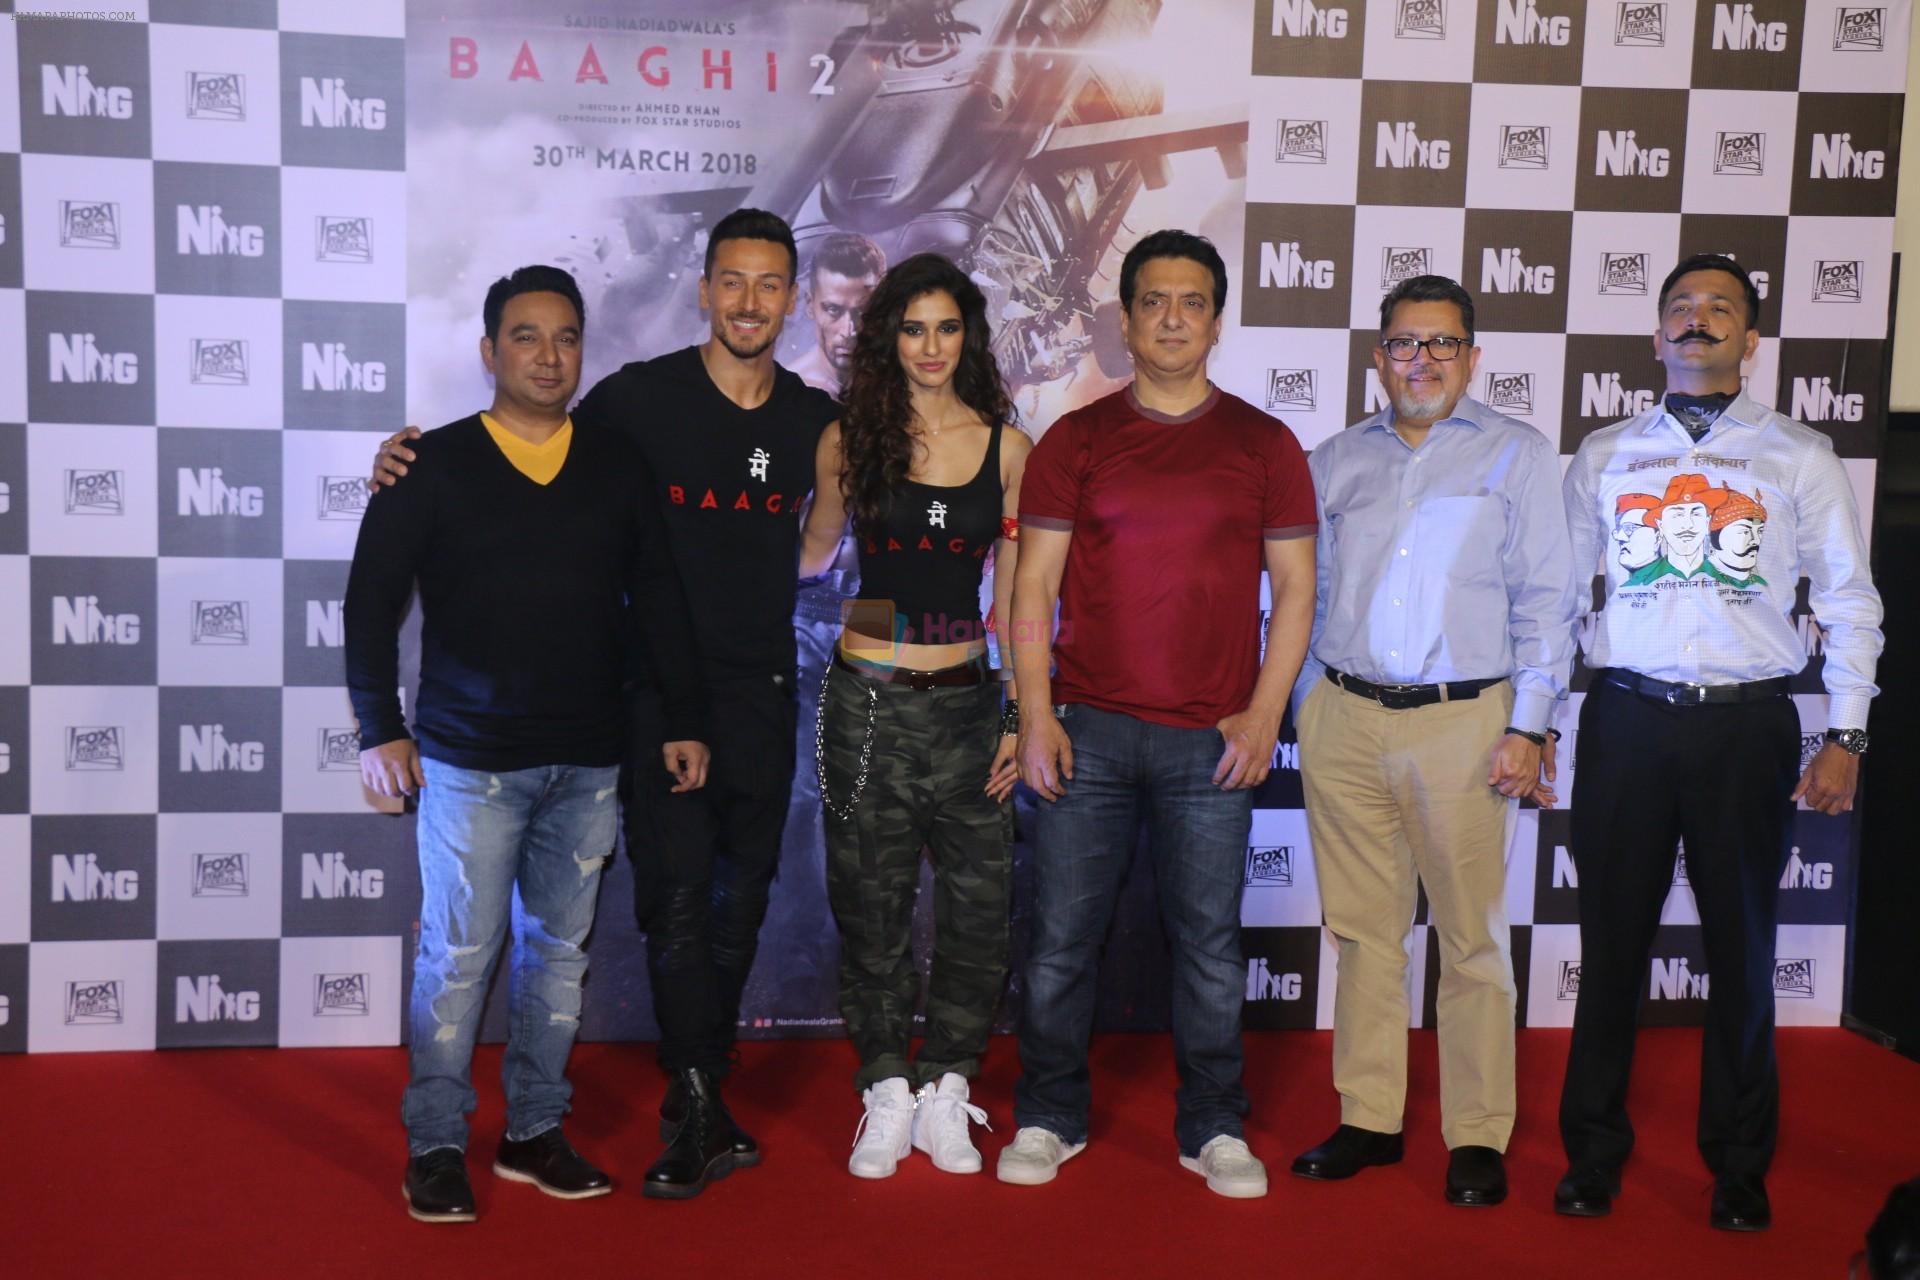 Tiger Shroff, Disha Patani, Sajid Nadiadwala, Ahmed Khan at the Trailer launch of Baaghi 2 in PVR, Lower Parel, Mumbai